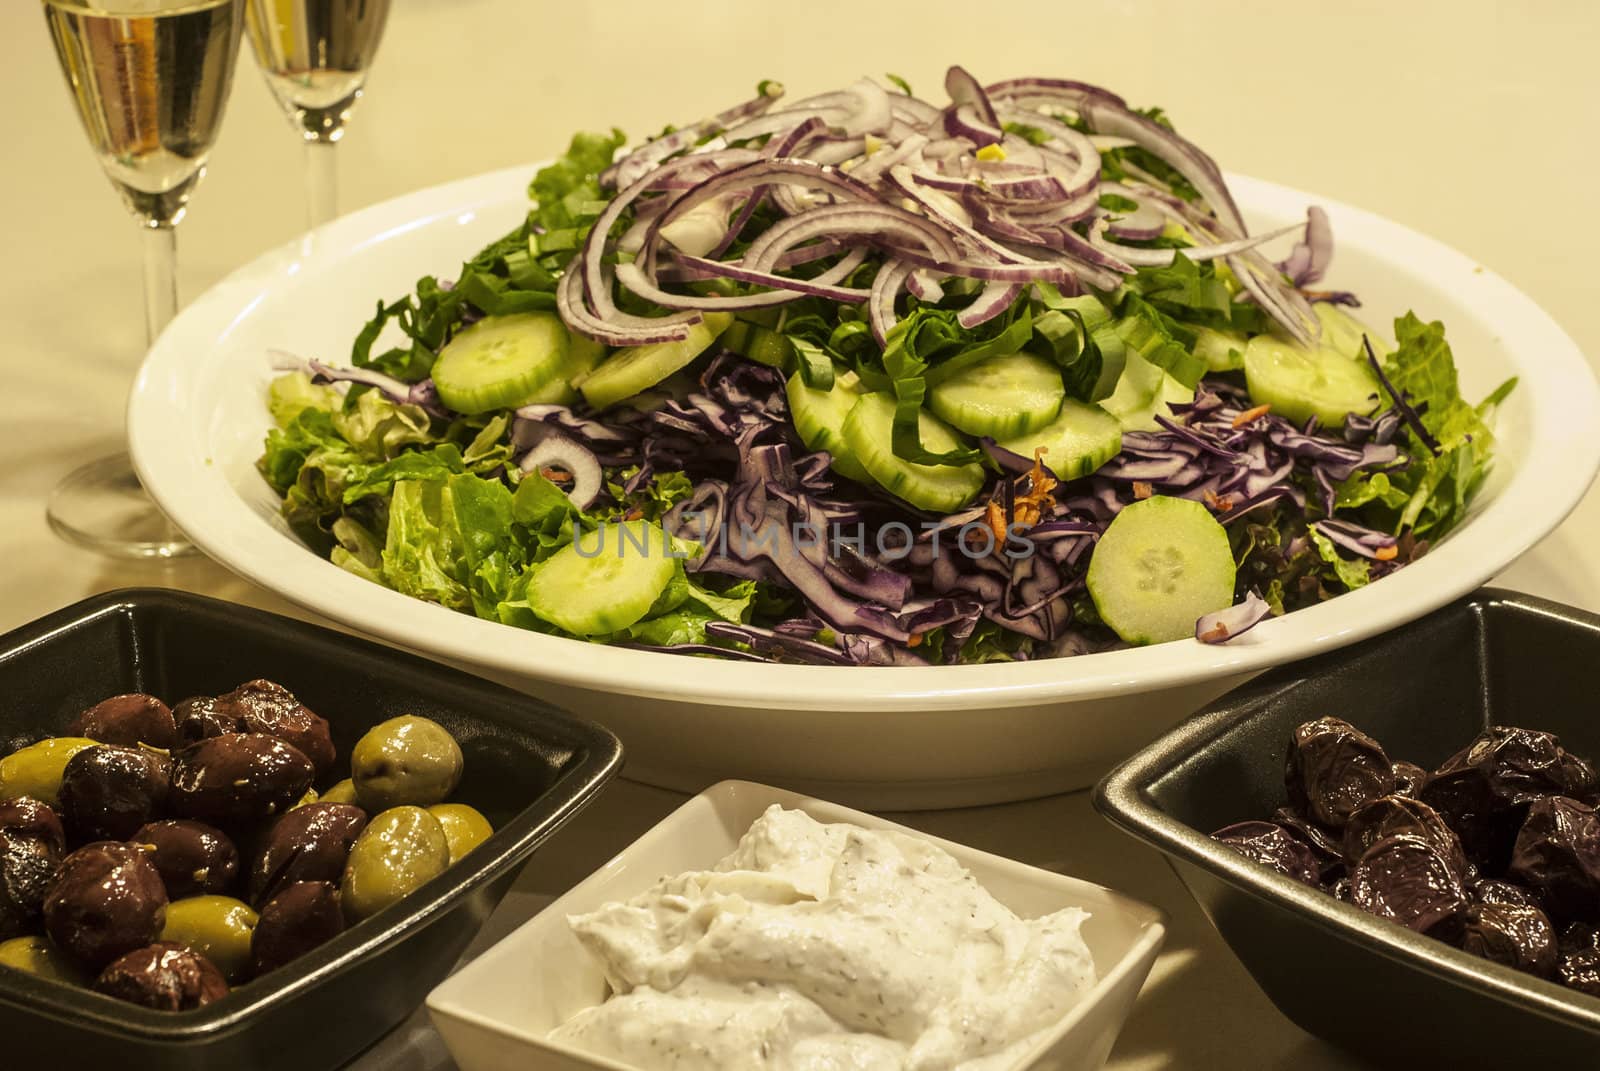 Salad dish, olives, caviar by varbenov